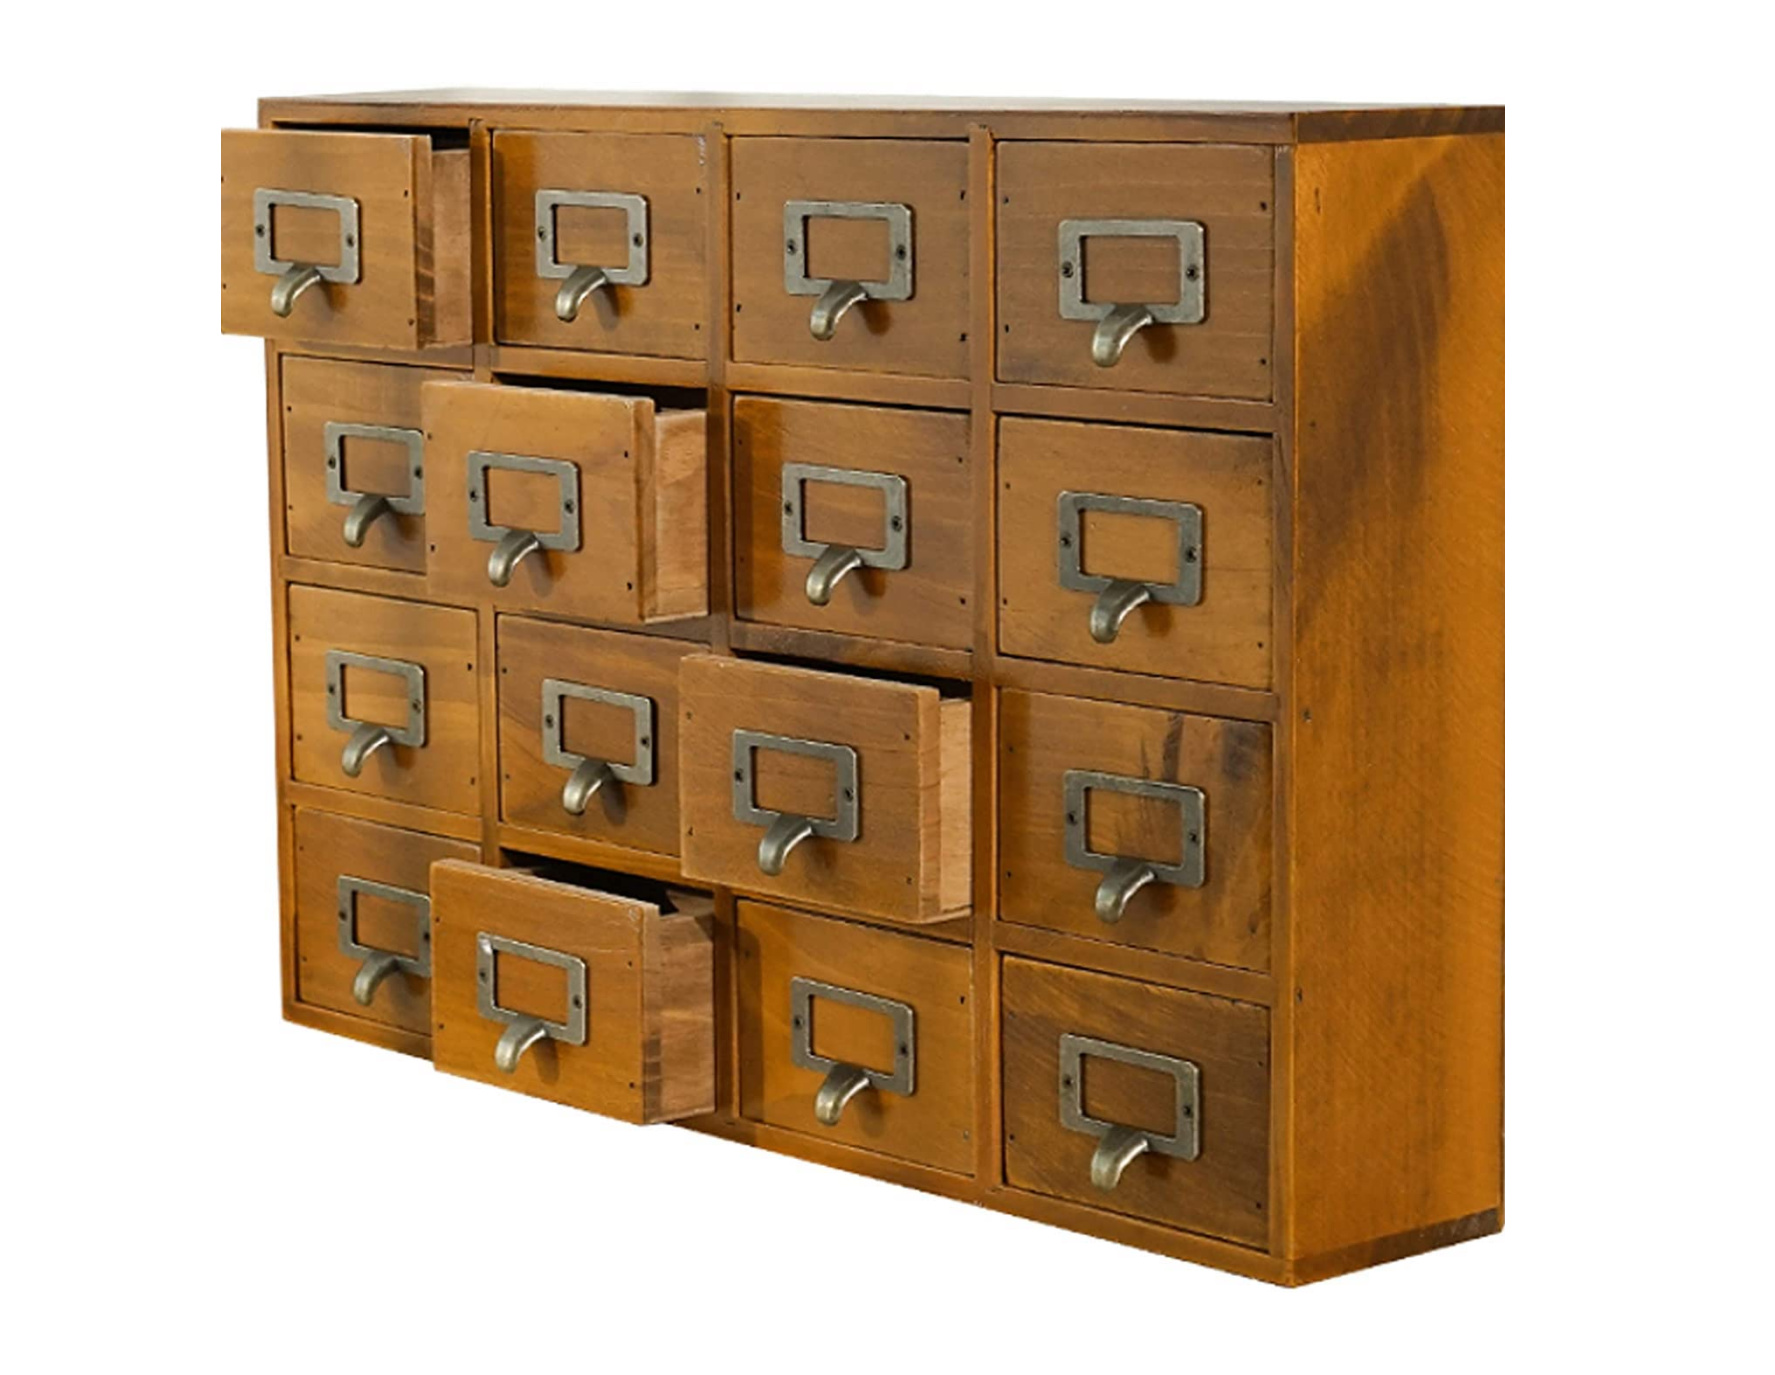 Supply Desk Drawer Organizer - Wooden Storage Box with 16 Drawers